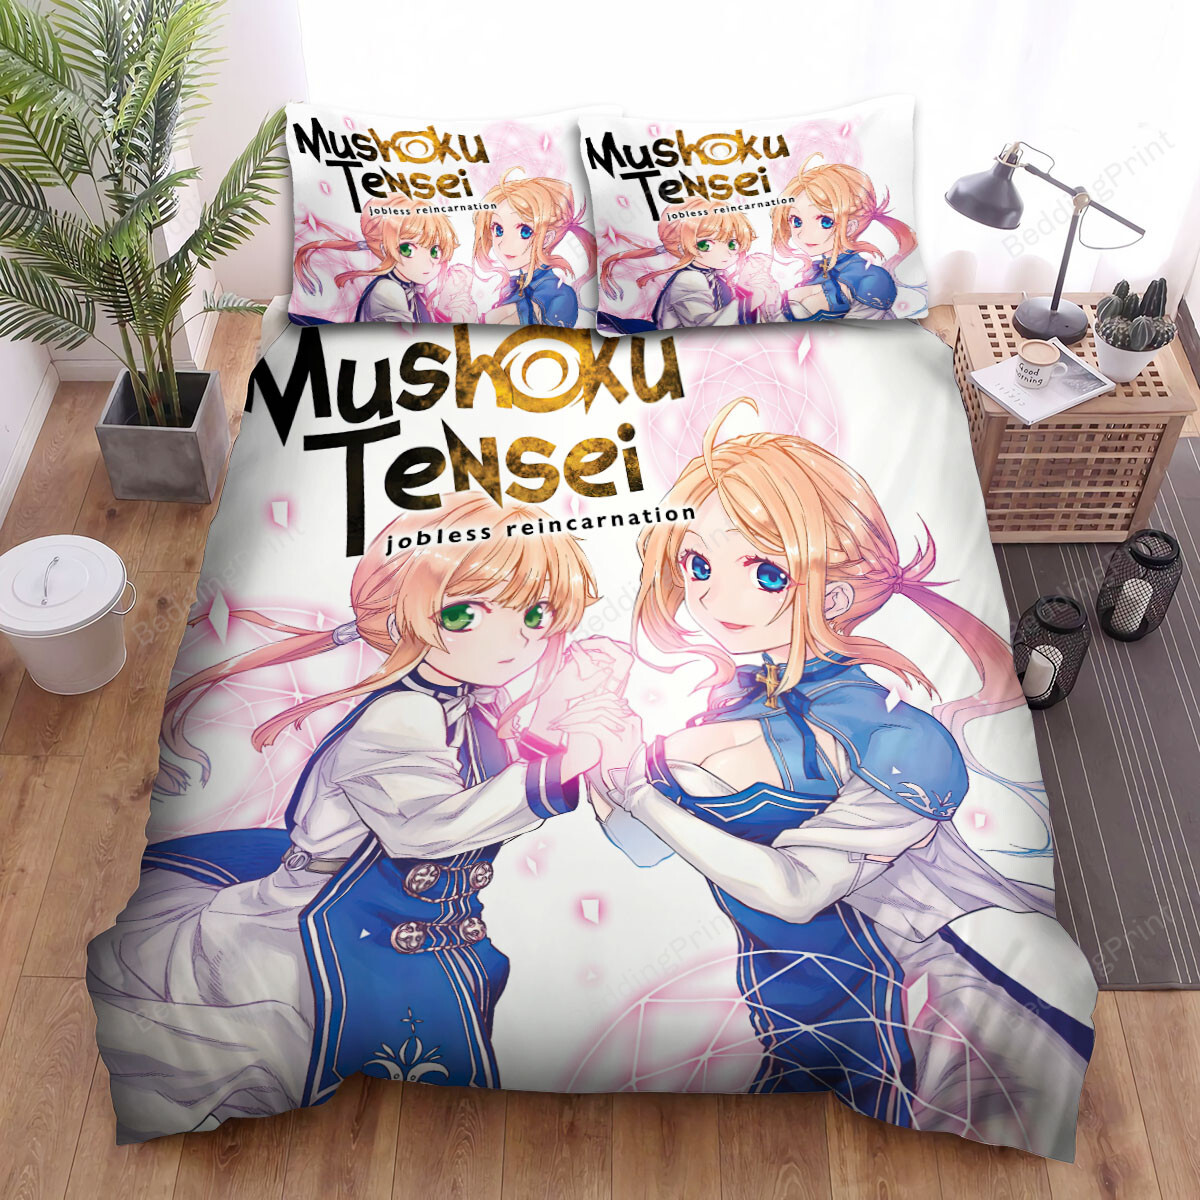 Mushoku Tensei Jobless Reincarnation Anime Volume 7 Art Cover Bed Sheets Spread Duvet Cover Bedding Sets